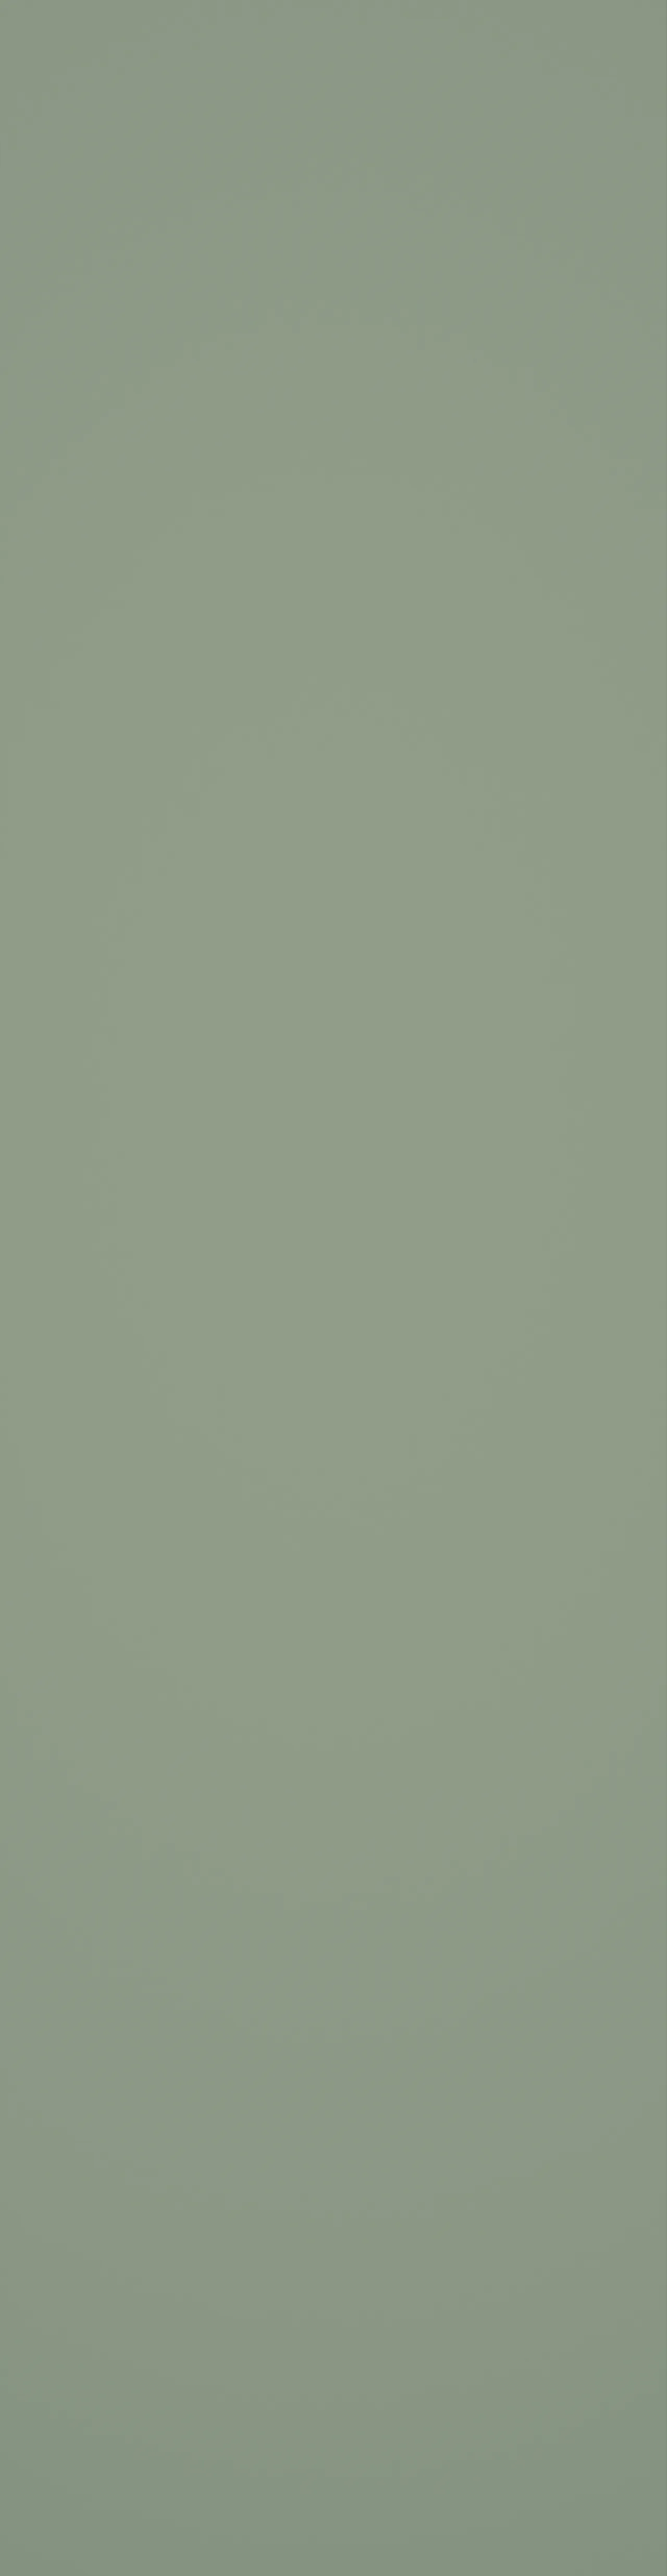 Baderomsp 5206-m00 em olivegreen colour col 11x620x2400